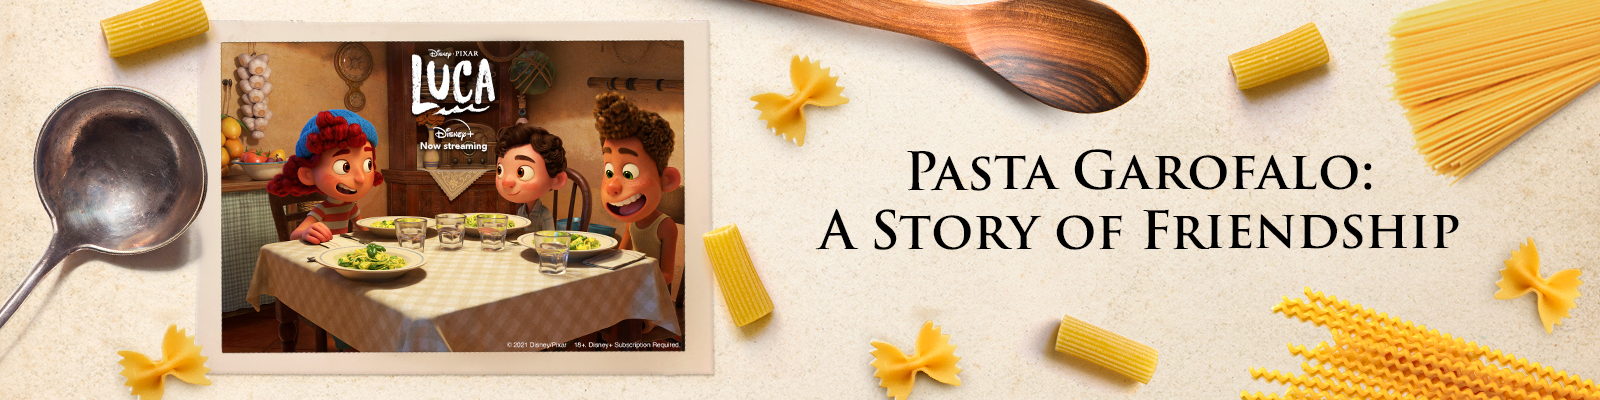 Pasta Garofalo feiert mit Disney und Pixars „Luca“ den Gusto des italienischen Sommers